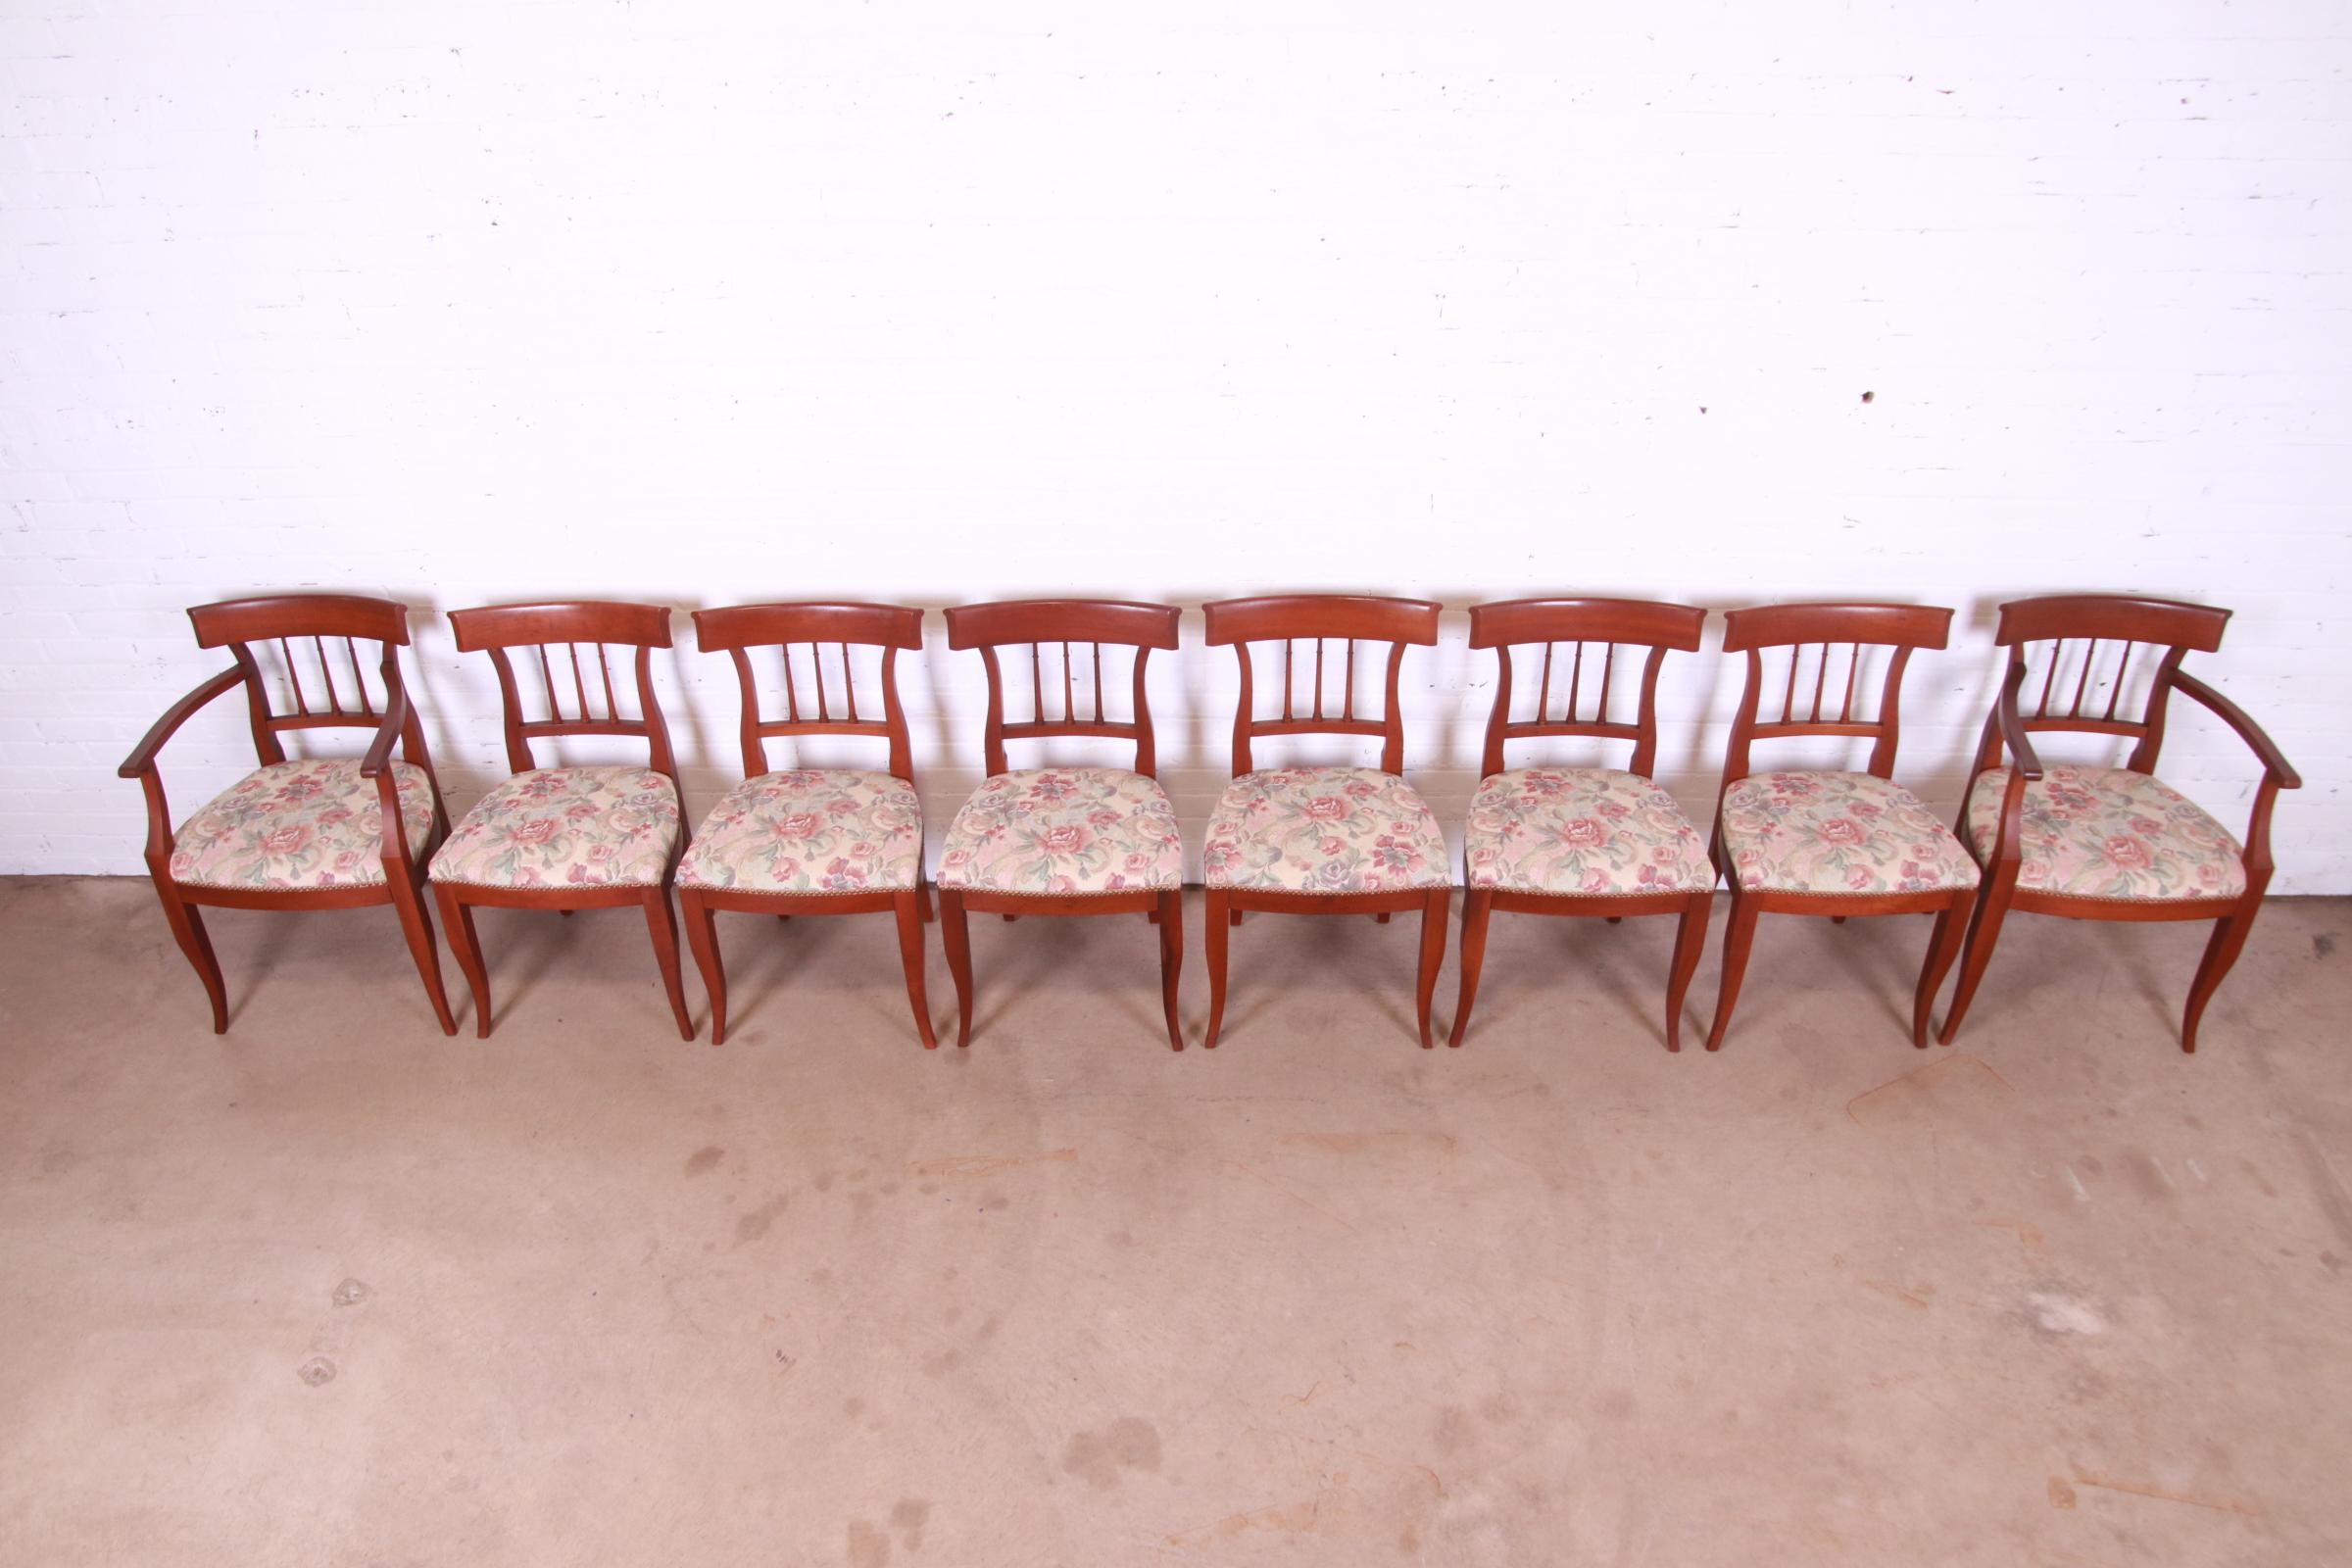 Laiton Kindel Furniture ensemble de huit chaises de salle à manger de style Régence française en cerisier massif en vente